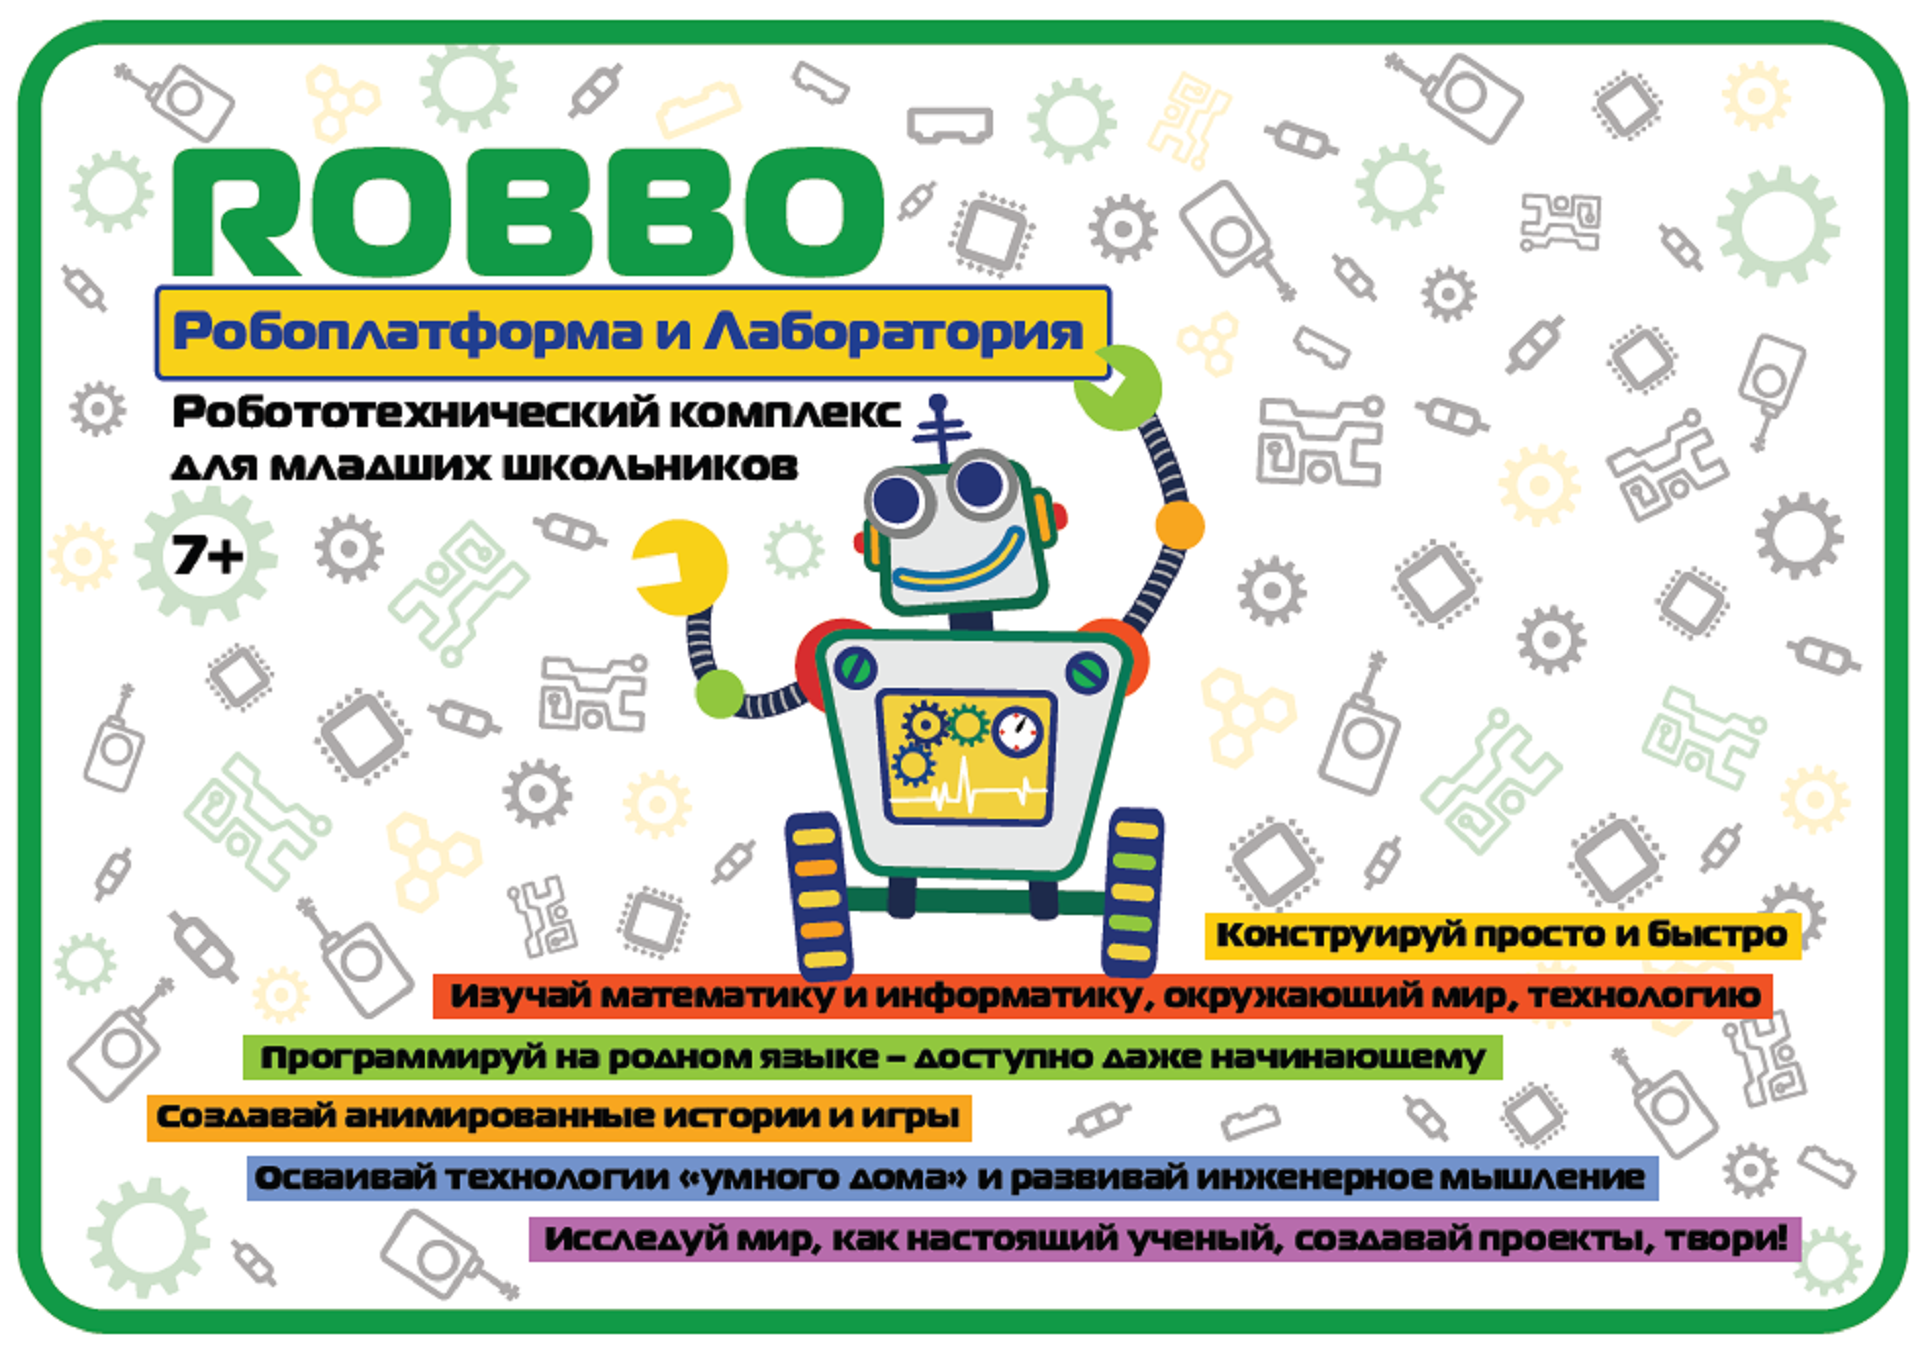 В ВятГУ разработано коробочное образовательное решение «Погружение младшего школьника в учебный предмет средствами робототехники»